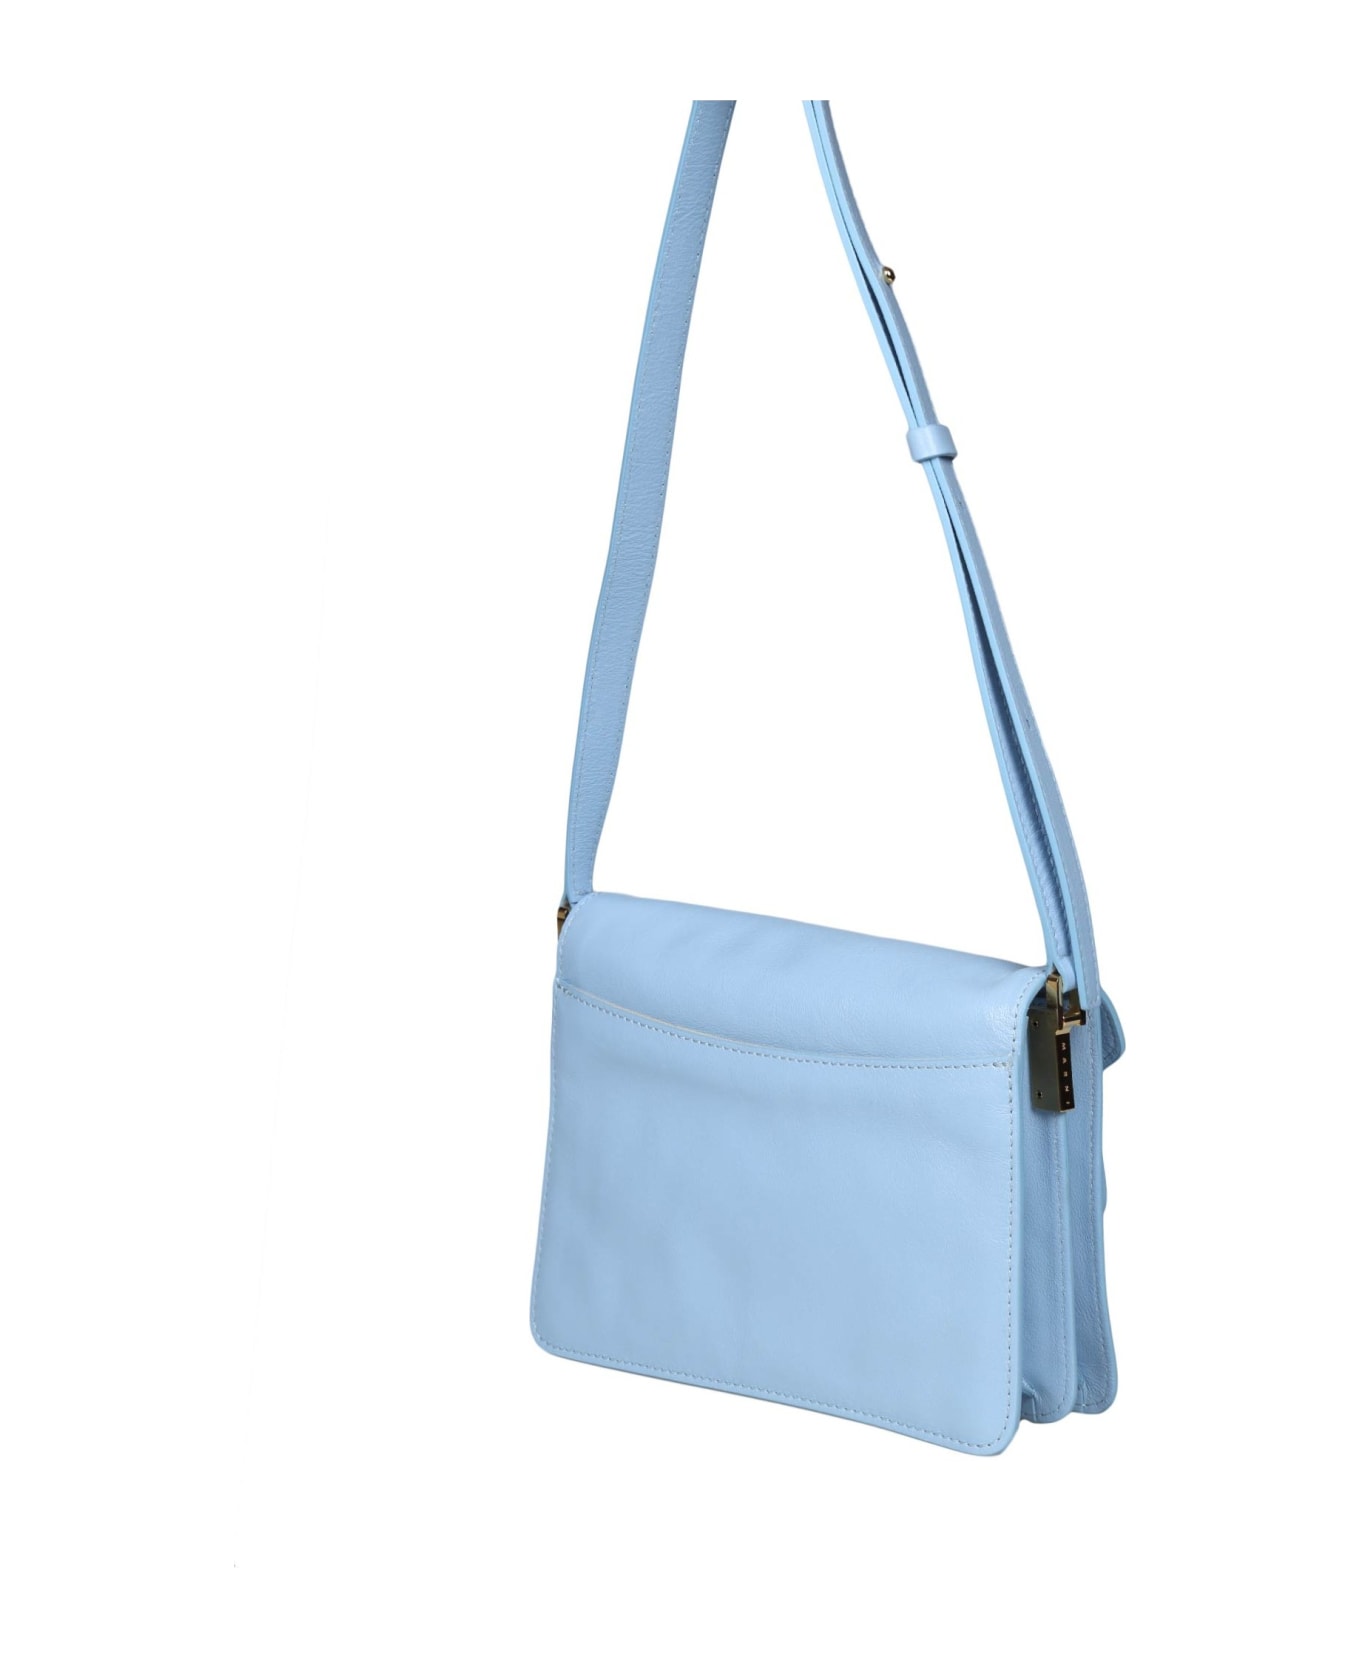 Marni Trunk Soft Shoulder Bag In Sky Blue Leather - Light blue